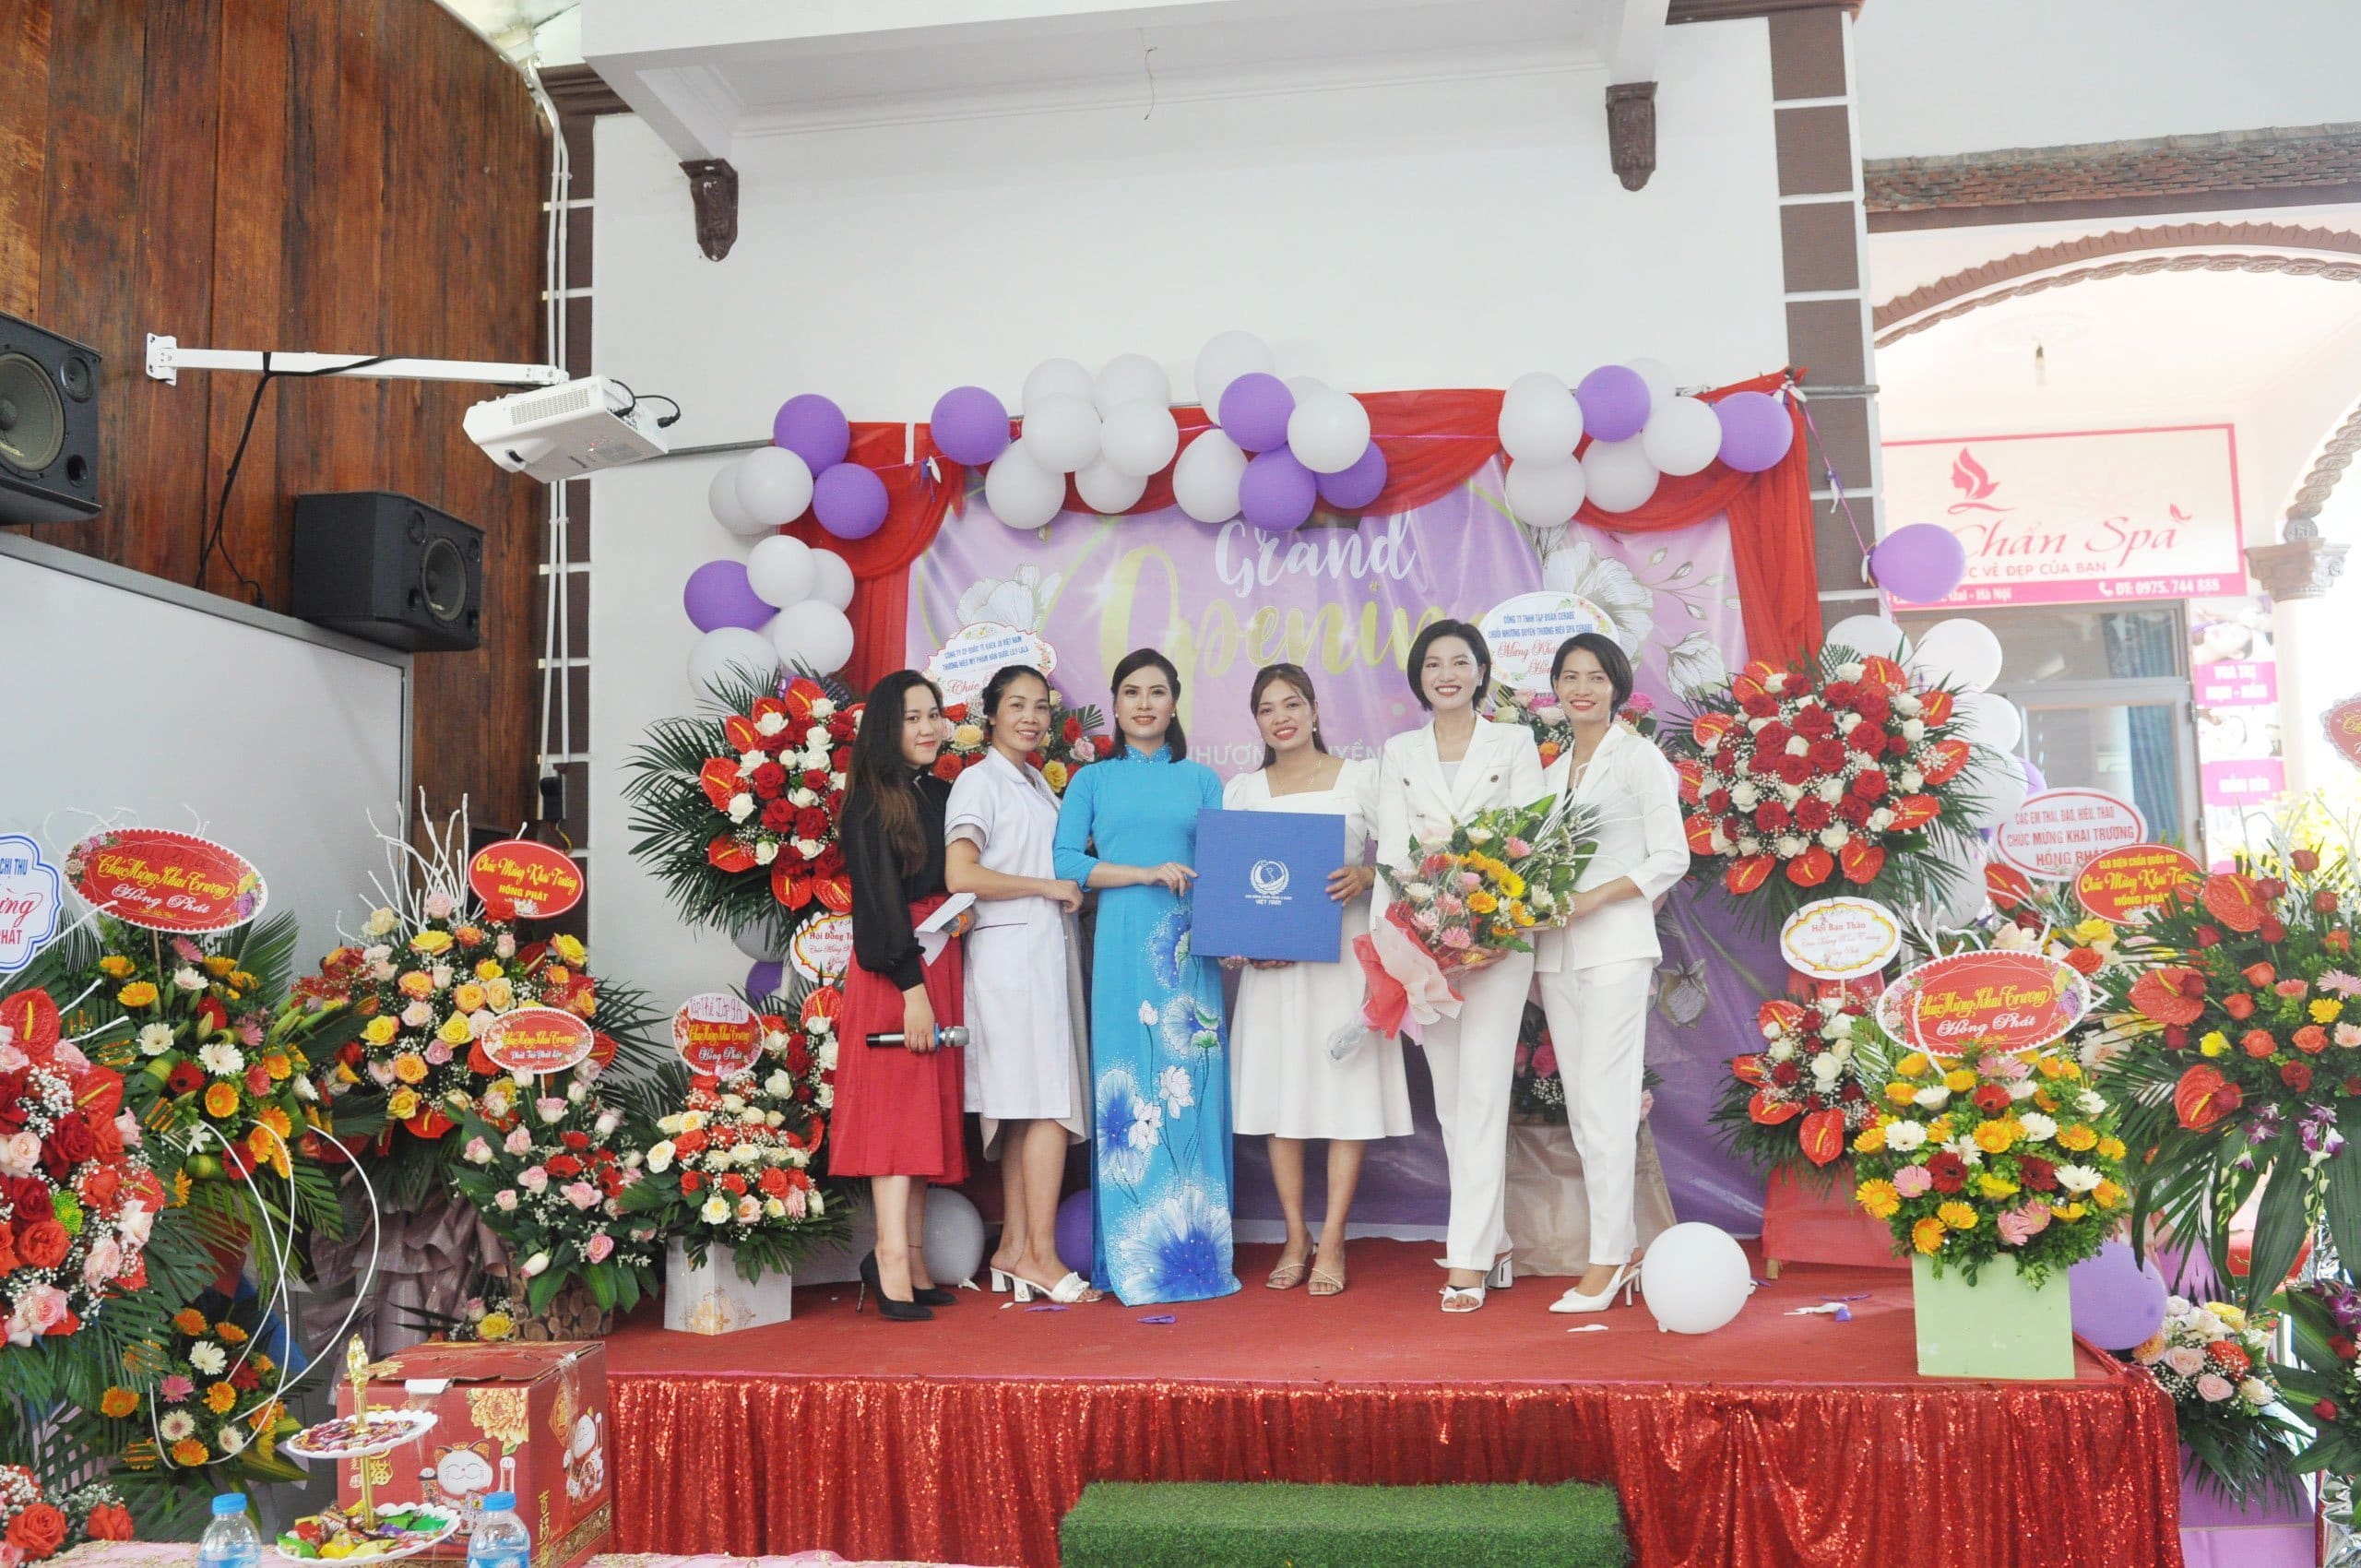 Giảng viên Nguyễn Bình tặng chuyên gia Ngô Ánh - chúc khai trương Cerabe Spa cơ sở 45